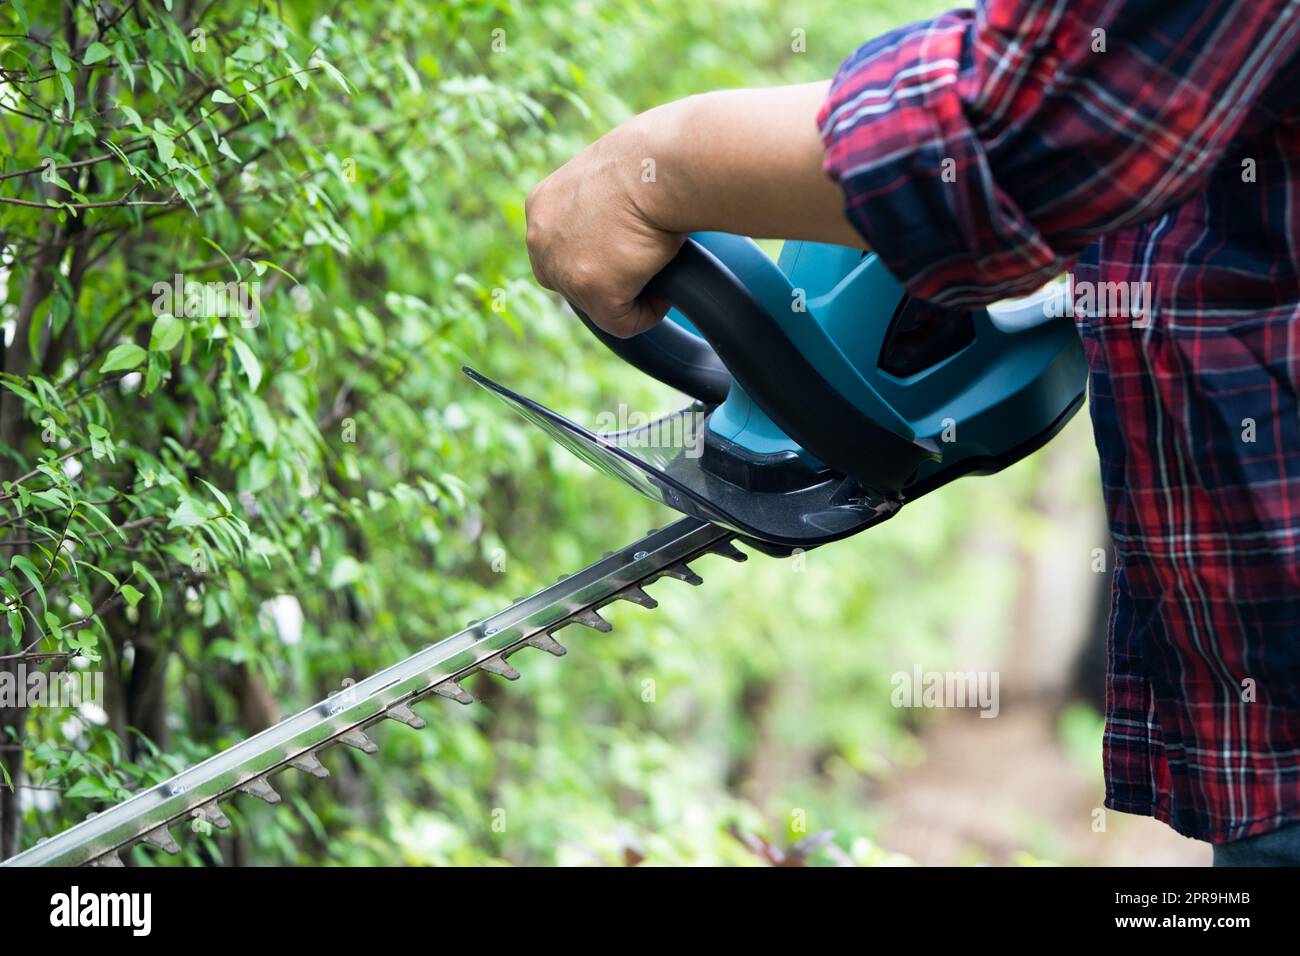 Gärtner hält elektrische Heckenschere, um die Baumkrone im Garten zu schneiden. Stockfoto